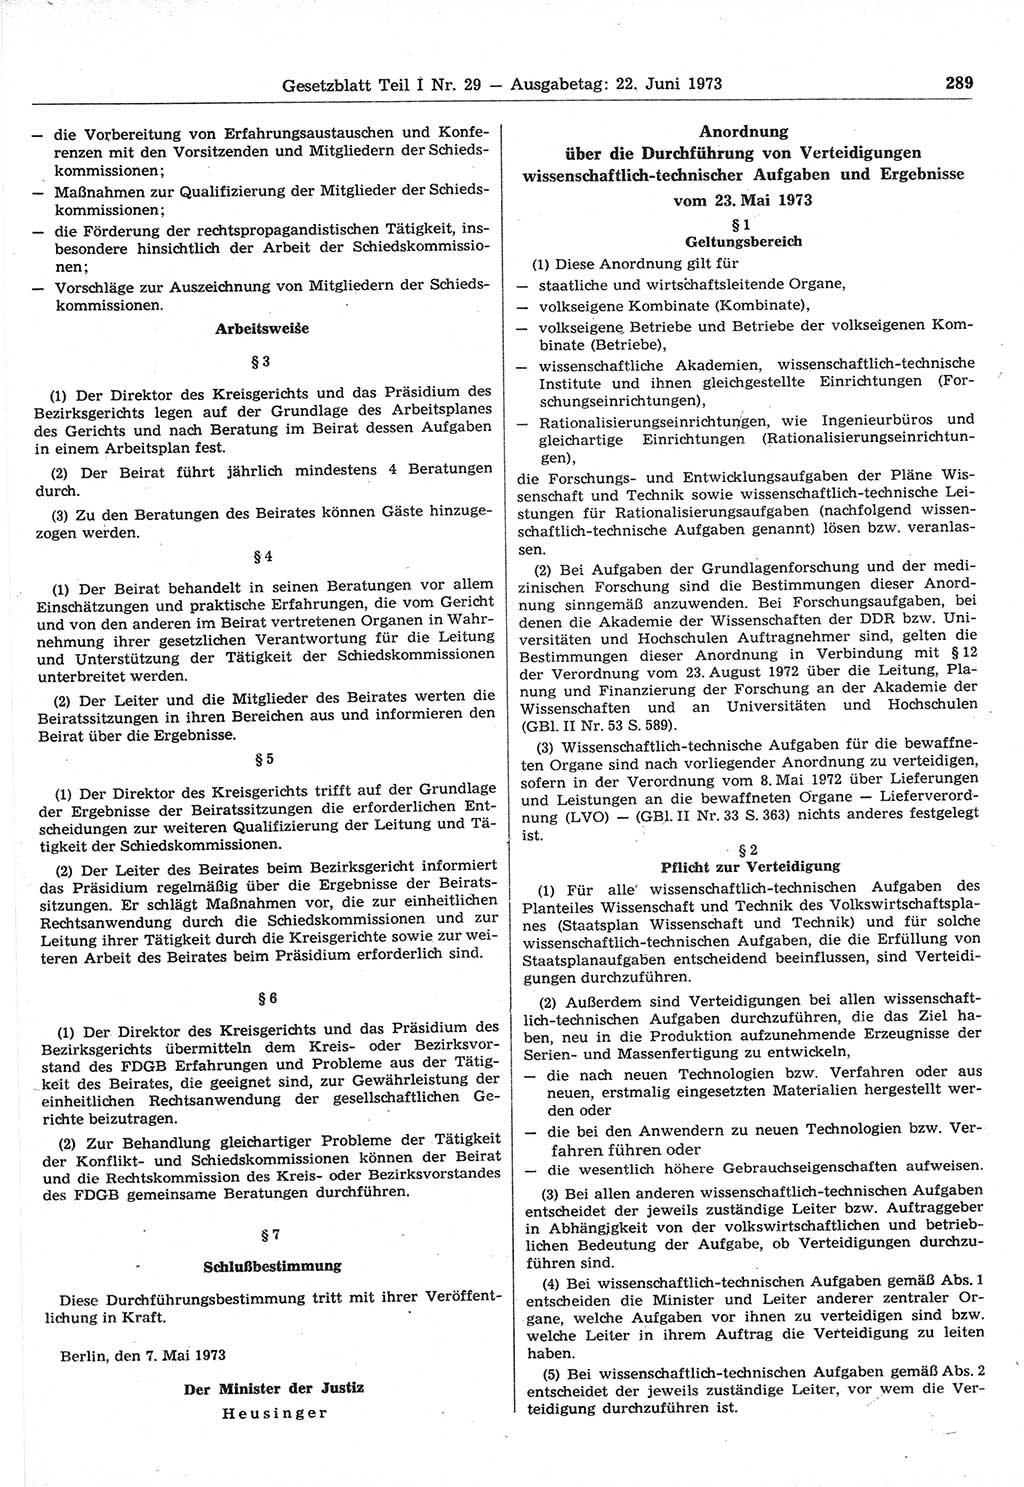 Gesetzblatt (GBl.) der Deutschen Demokratischen Republik (DDR) Teil Ⅰ 1973, Seite 289 (GBl. DDR Ⅰ 1973, S. 289)